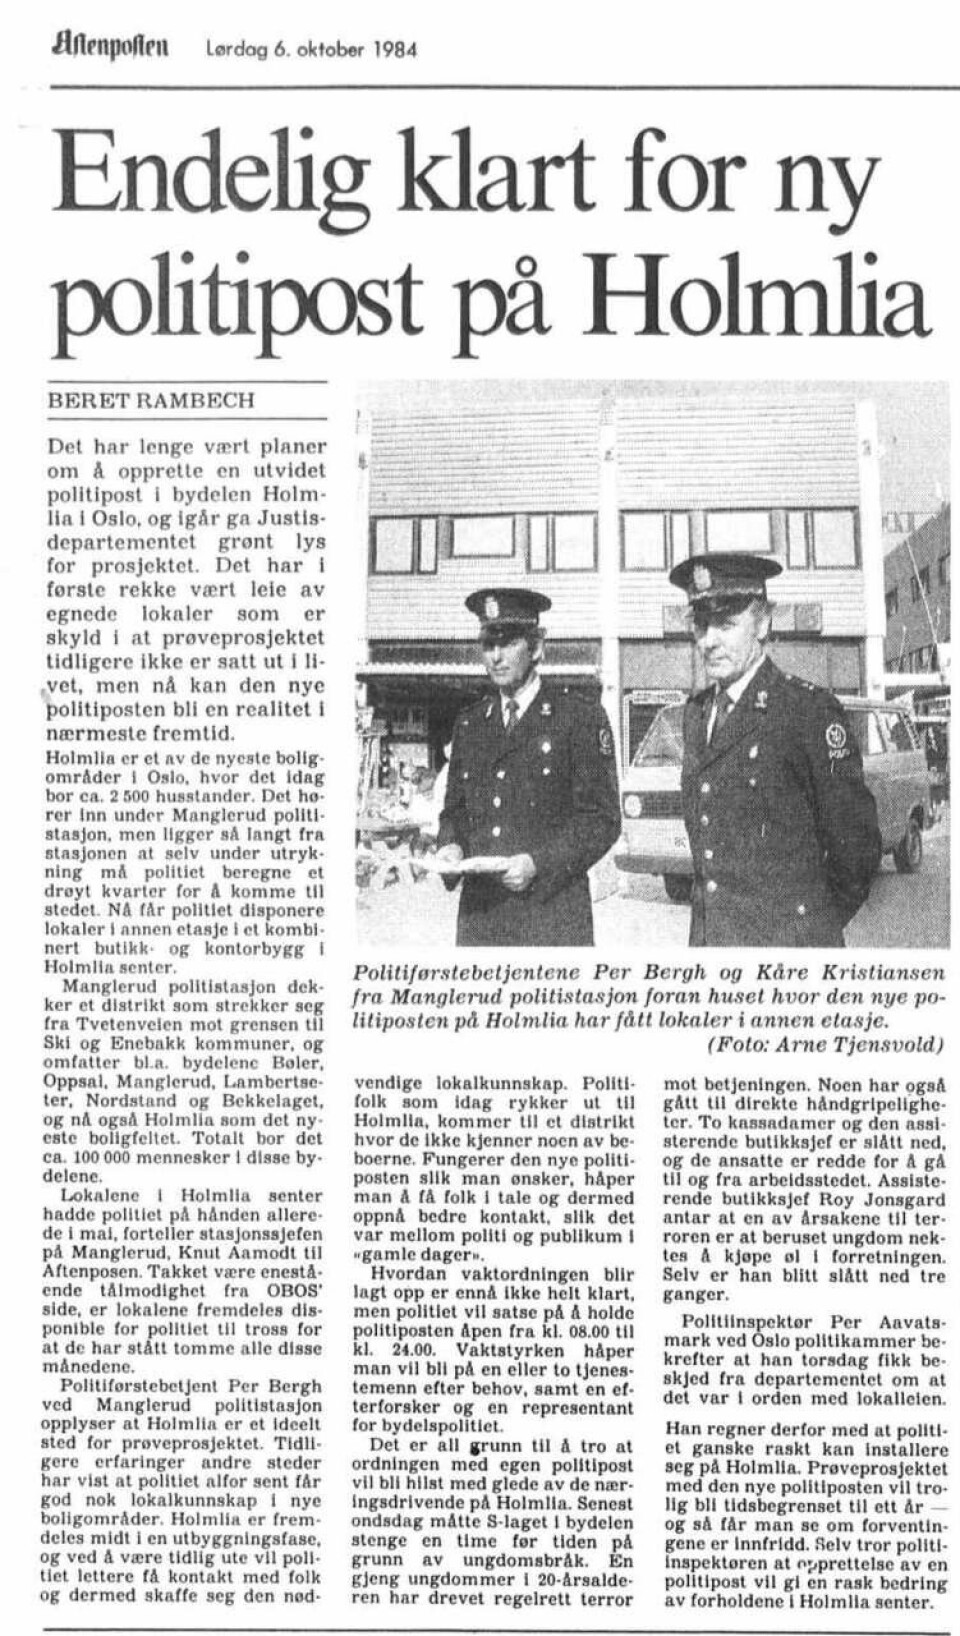 ETTERLENGTET: Høsten 1984 kom gladmeldingen i Aftenposten om at Holmlias 2500 husstander skulle få egen politipost.